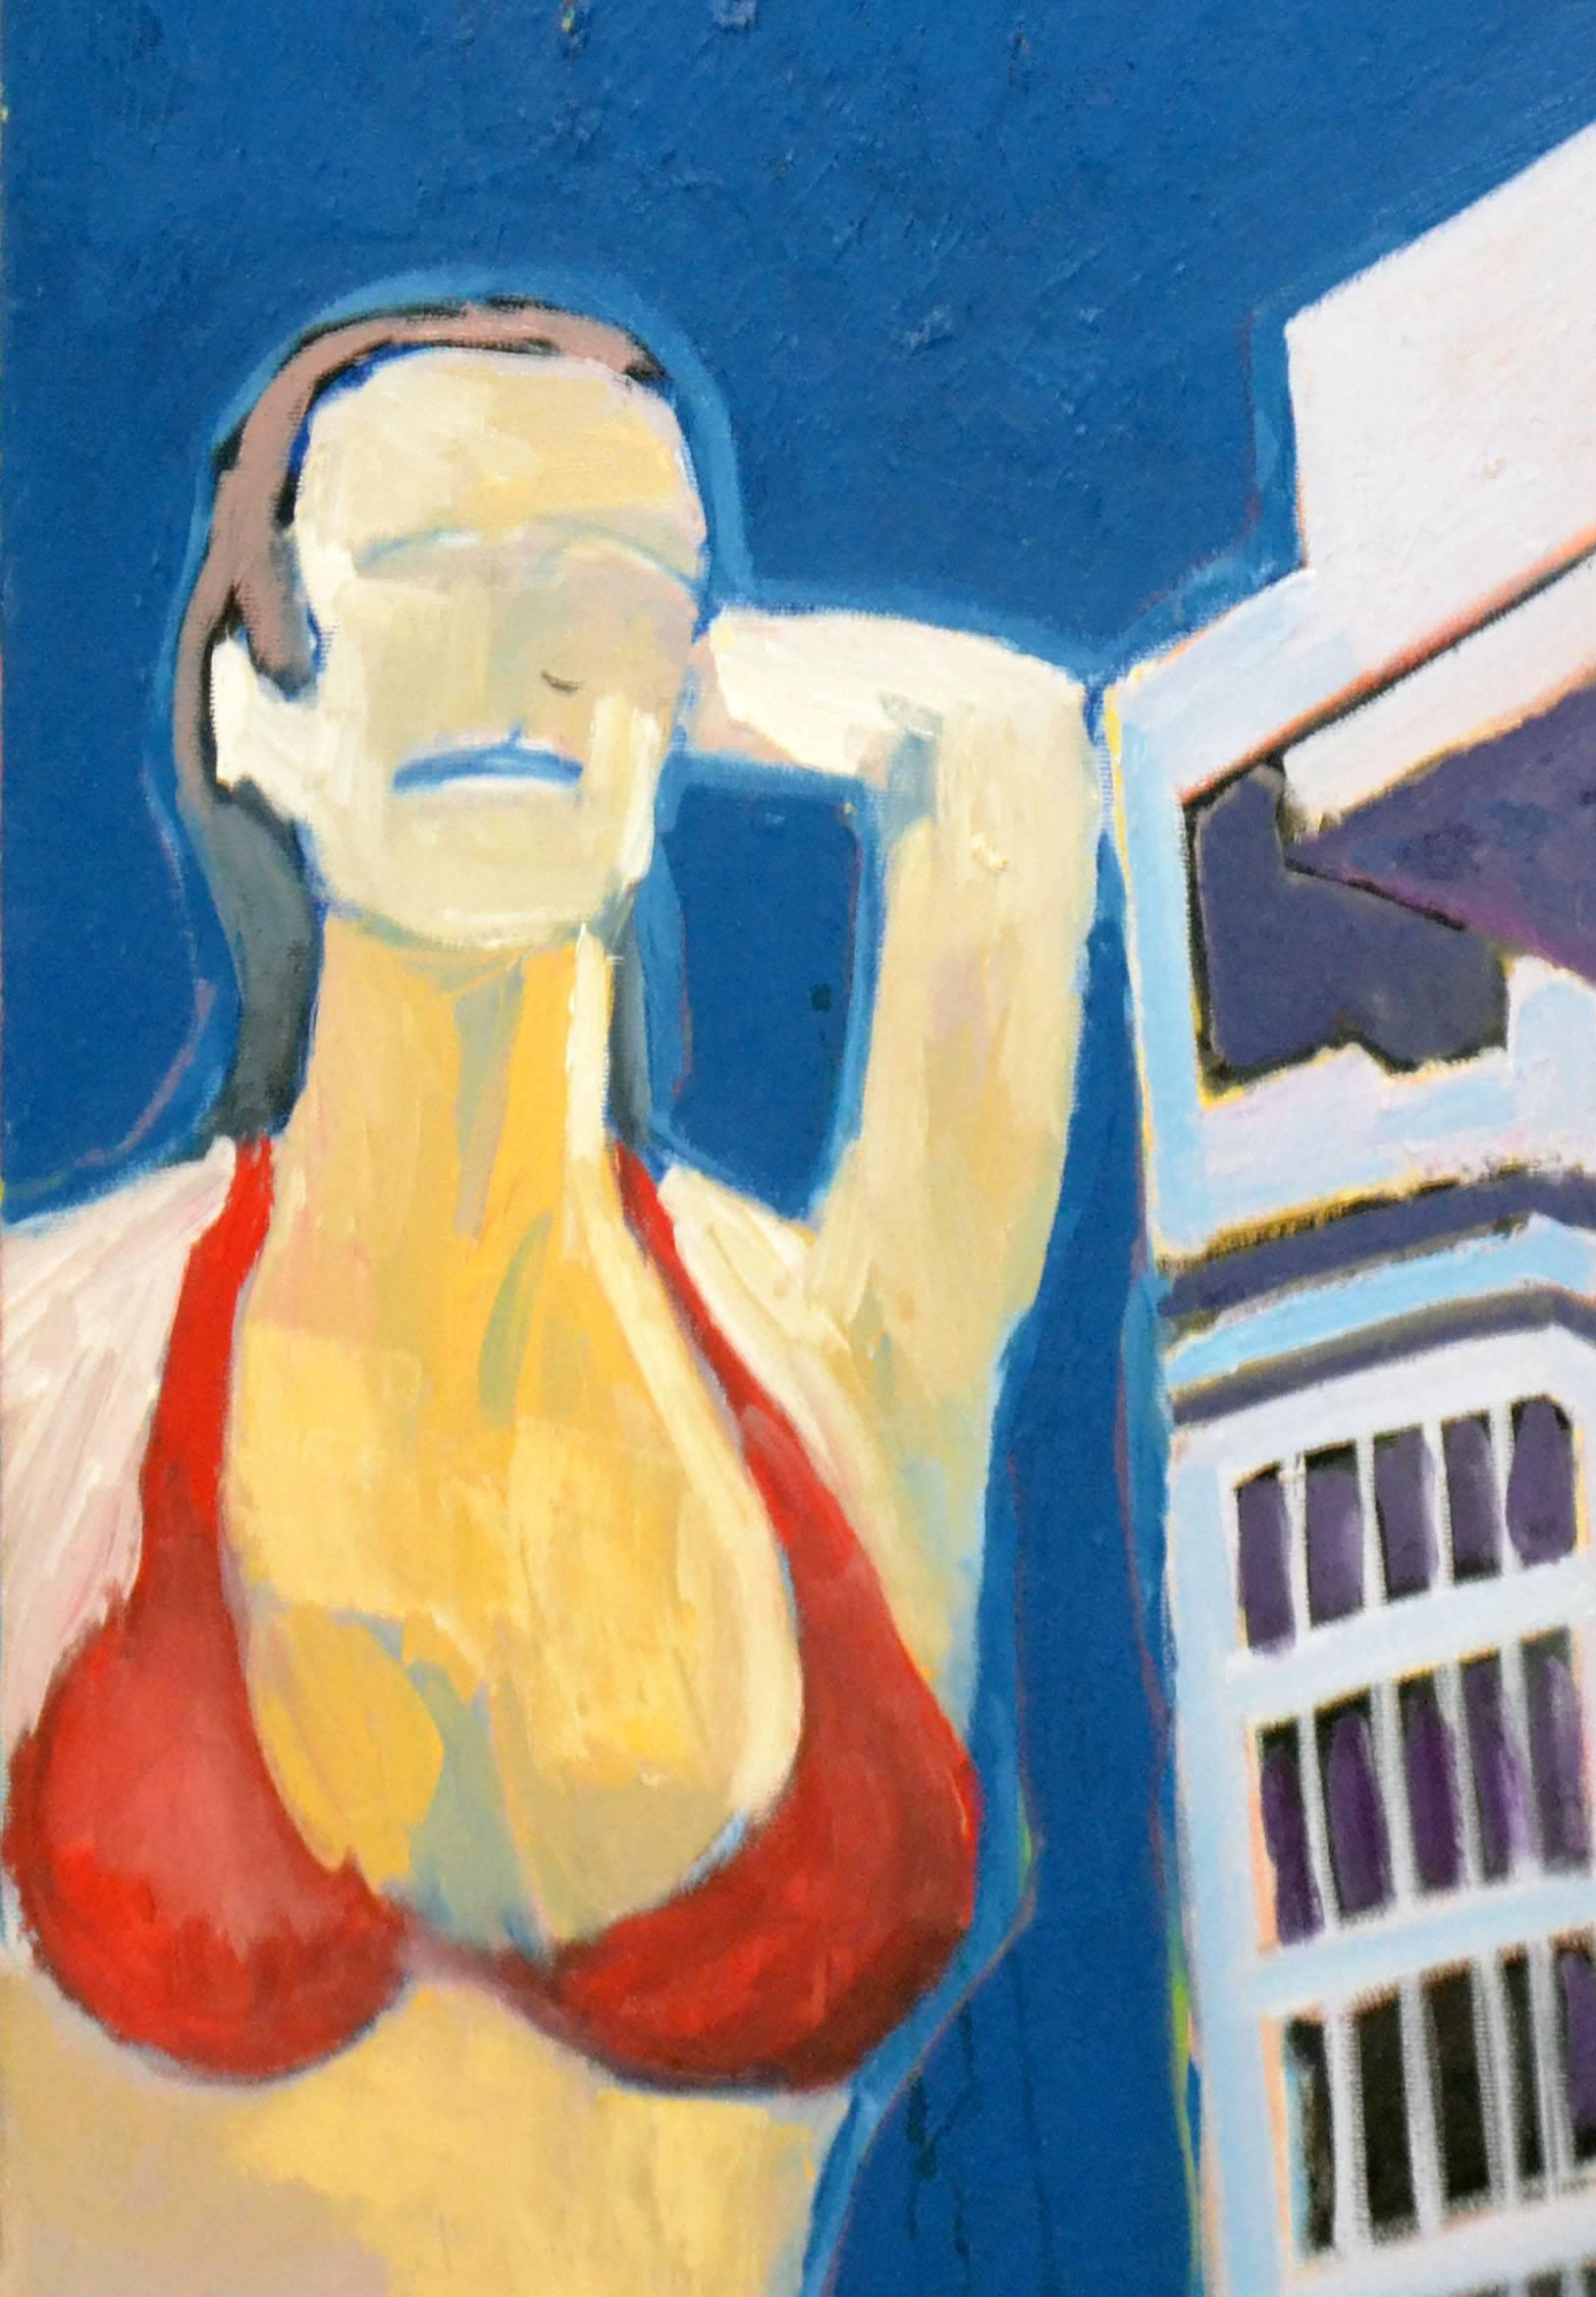 Zeitgenössische figurative abstrakte Frau in rotem Bikini  – Painting von Michael William Eggleston